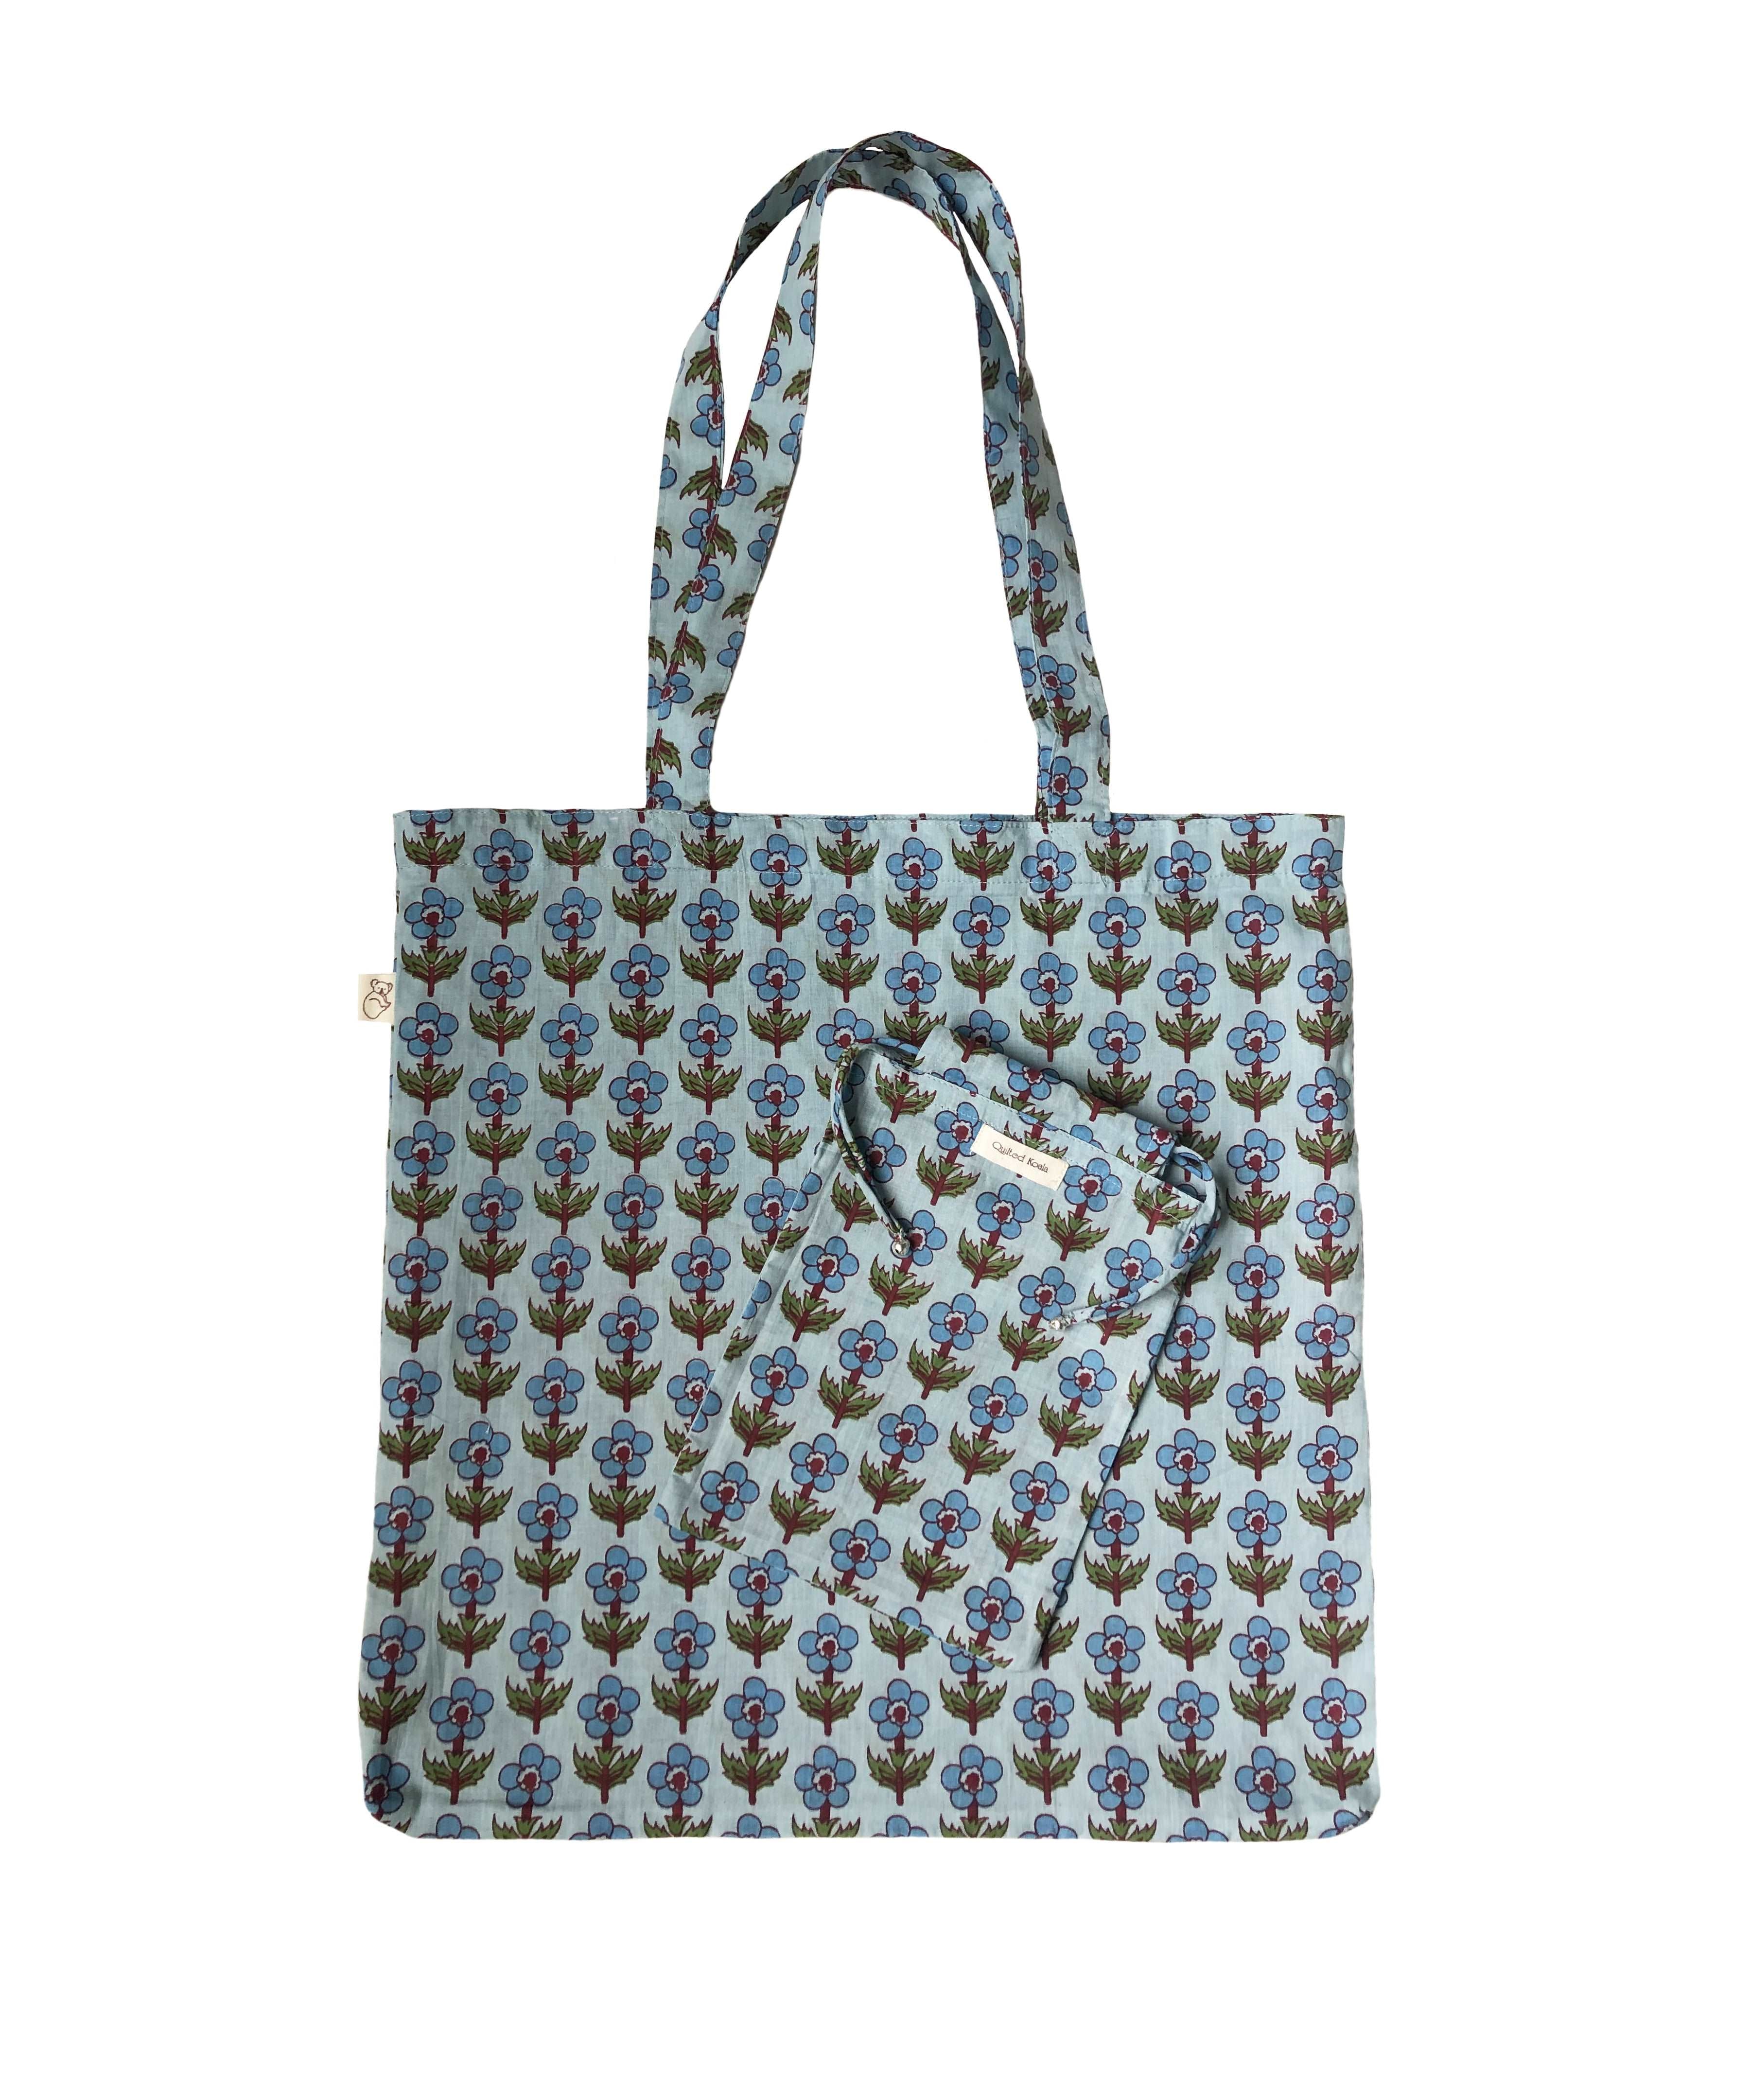 Boho Market Bag - Blue  Just $8 - Quilted Koala